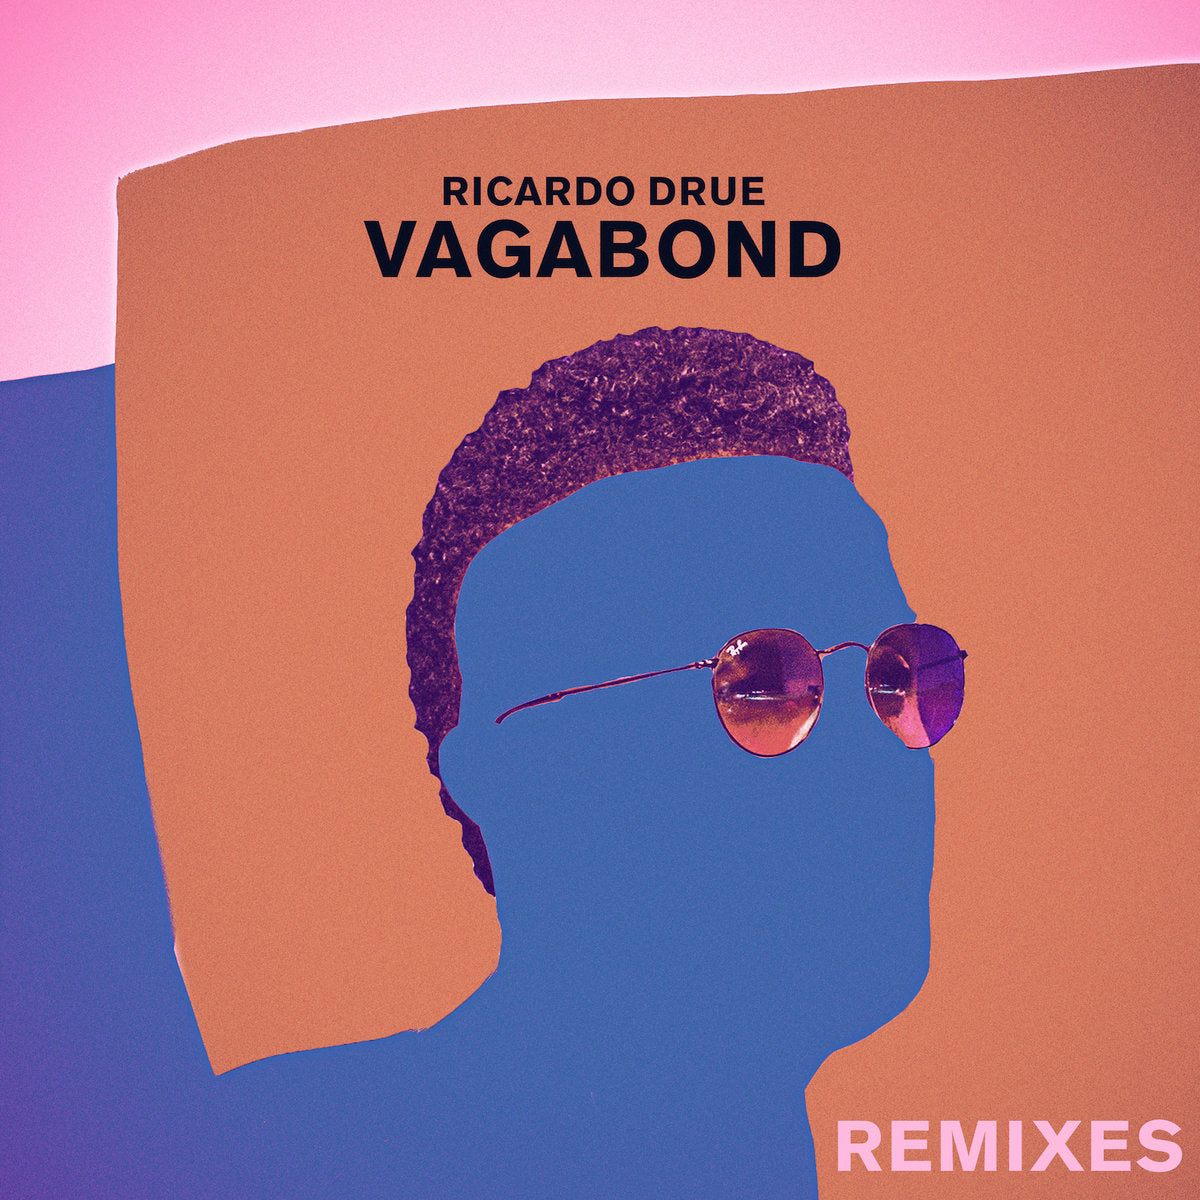 Vagabond (Remixes)